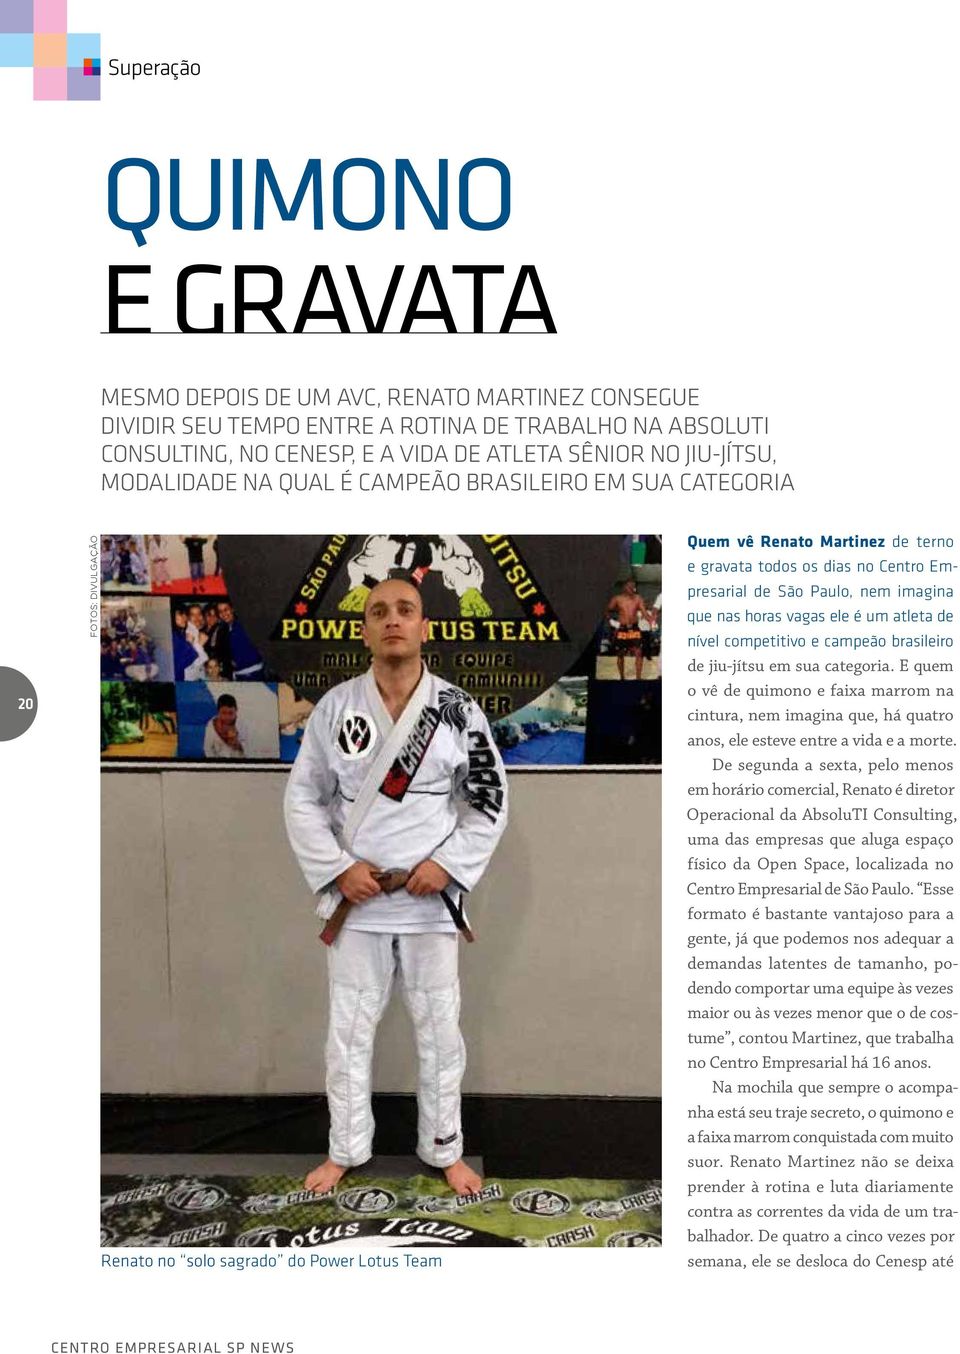 de São Paulo, nem imagina que nas horas vagas ele é um atleta de nível competitivo e campeão brasileiro de jiu-jítsu em sua categoria.